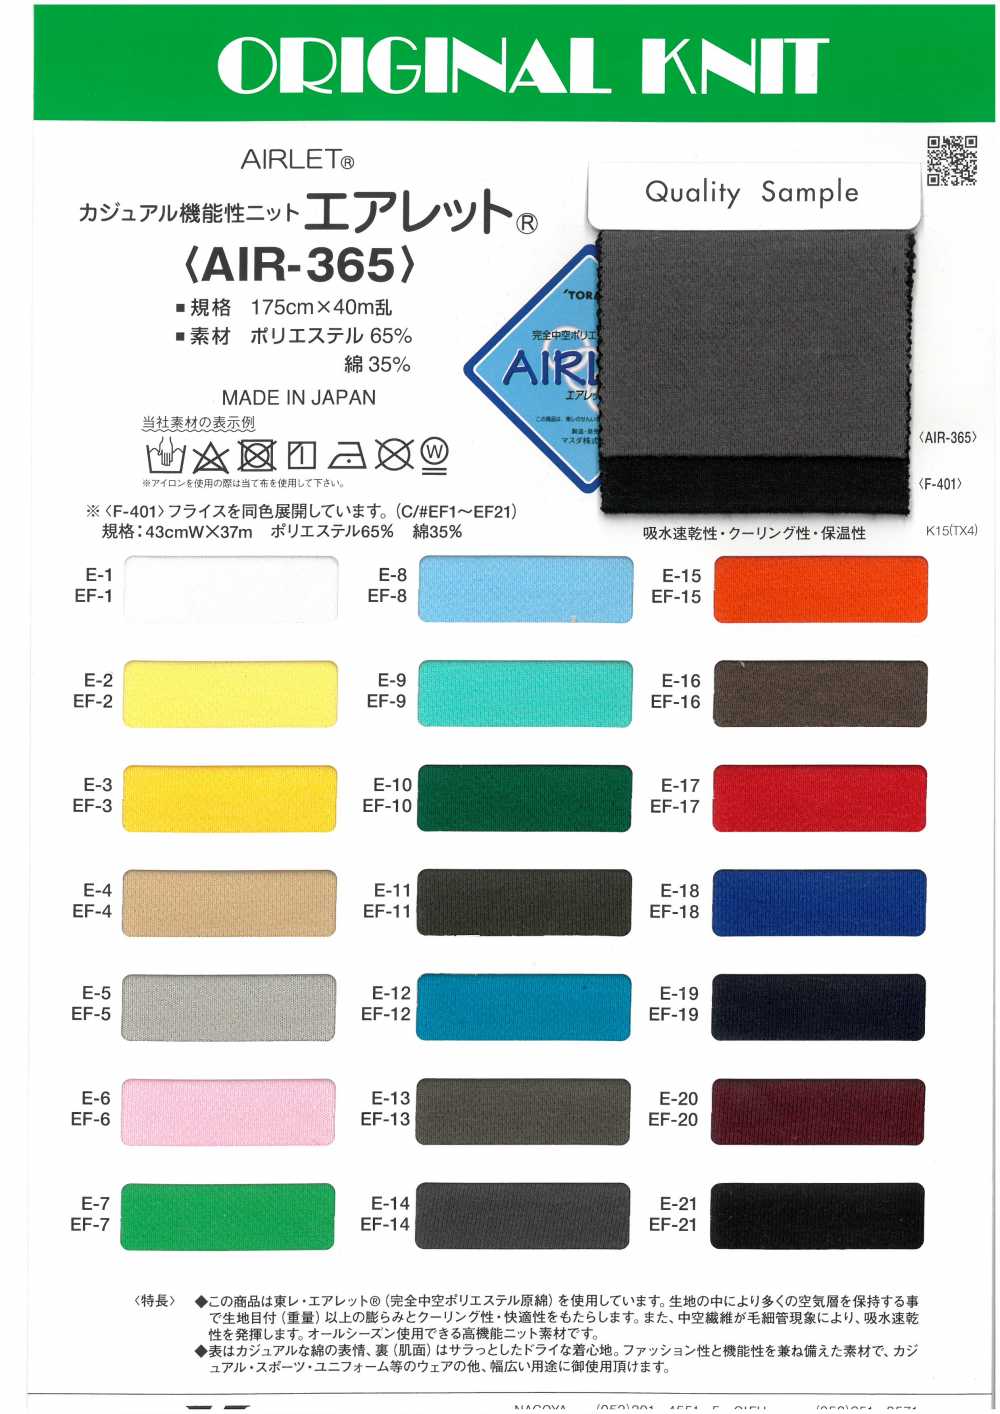 AIR-155 Shin Airlet Pro[Fabrication De Textile] Masuda